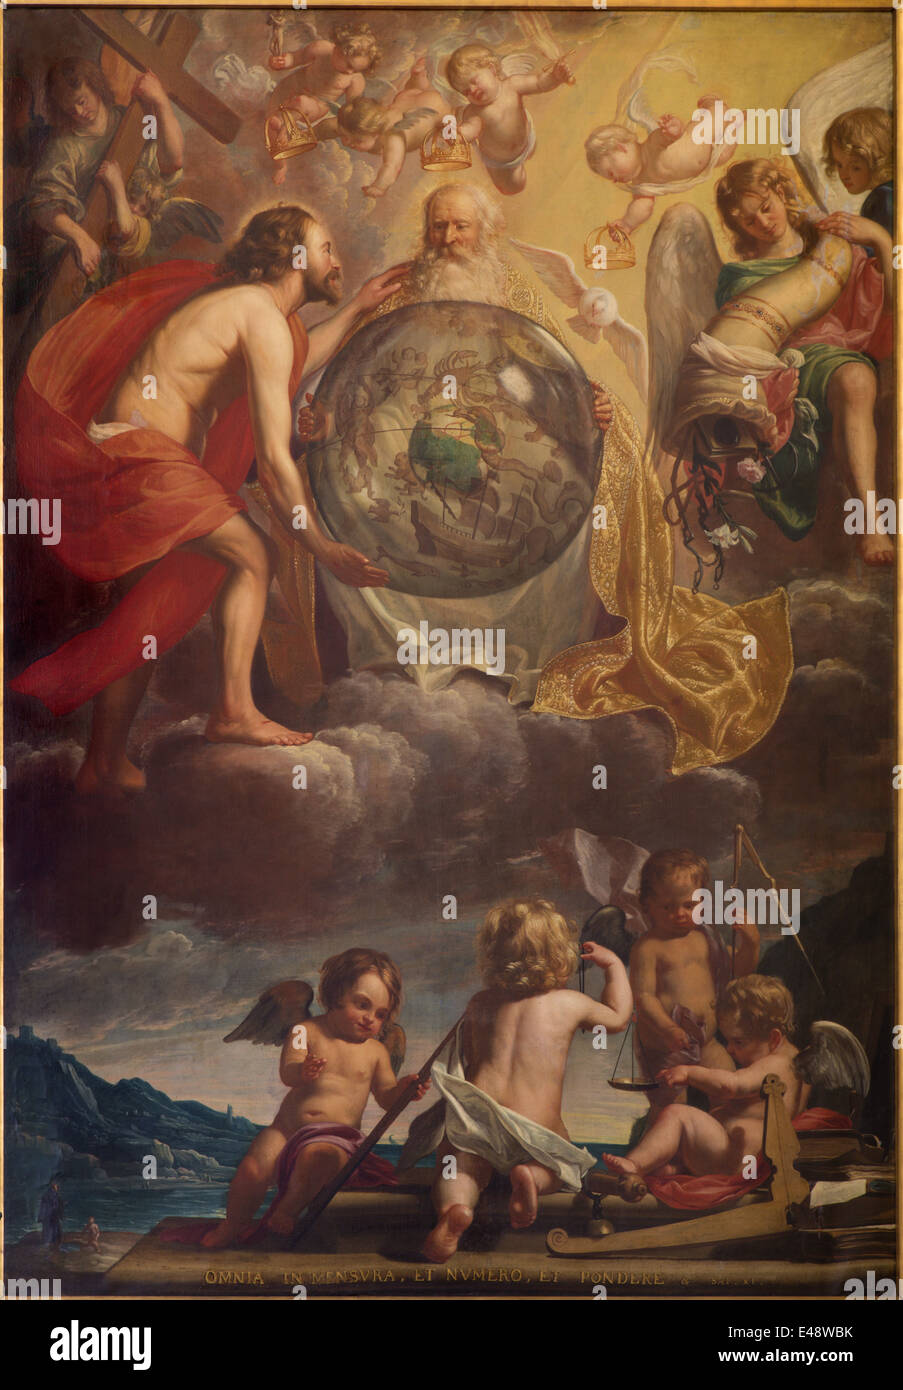 Brujas - La Santísima Trinidad en la creación probablemente por Jan Anton Garemjin (1712 - 1799) en st. Giles (Sint Gilliskerk). Foto de stock